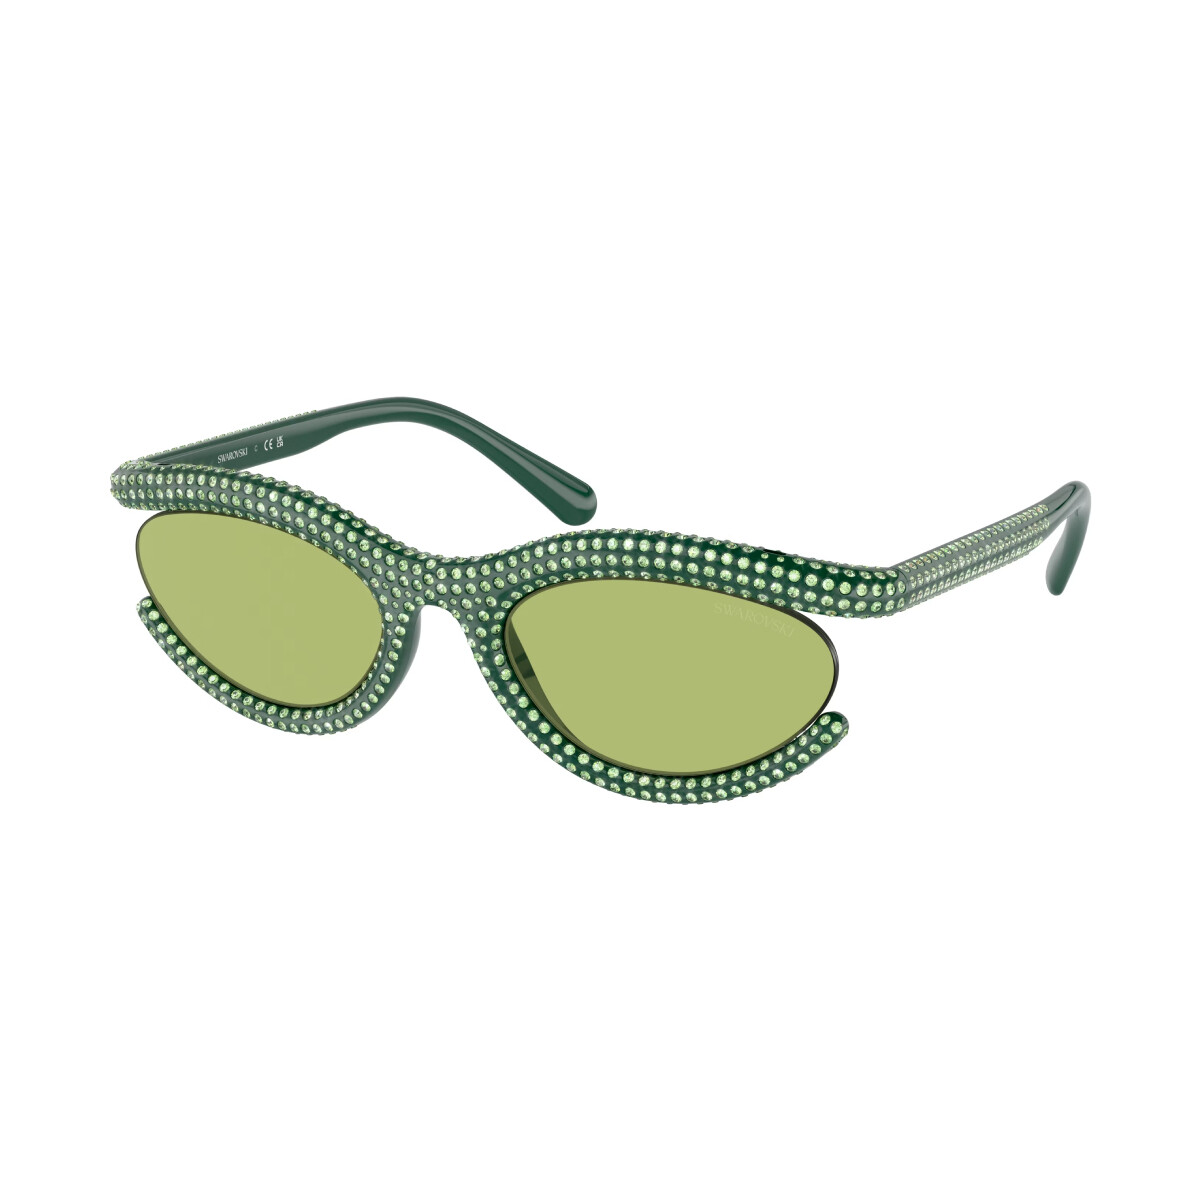 Orologi & Gioielli Donna Occhiali da sole Swarovski SK6006 Occhiali da sole, Verde/Verde, 54 mm Verde